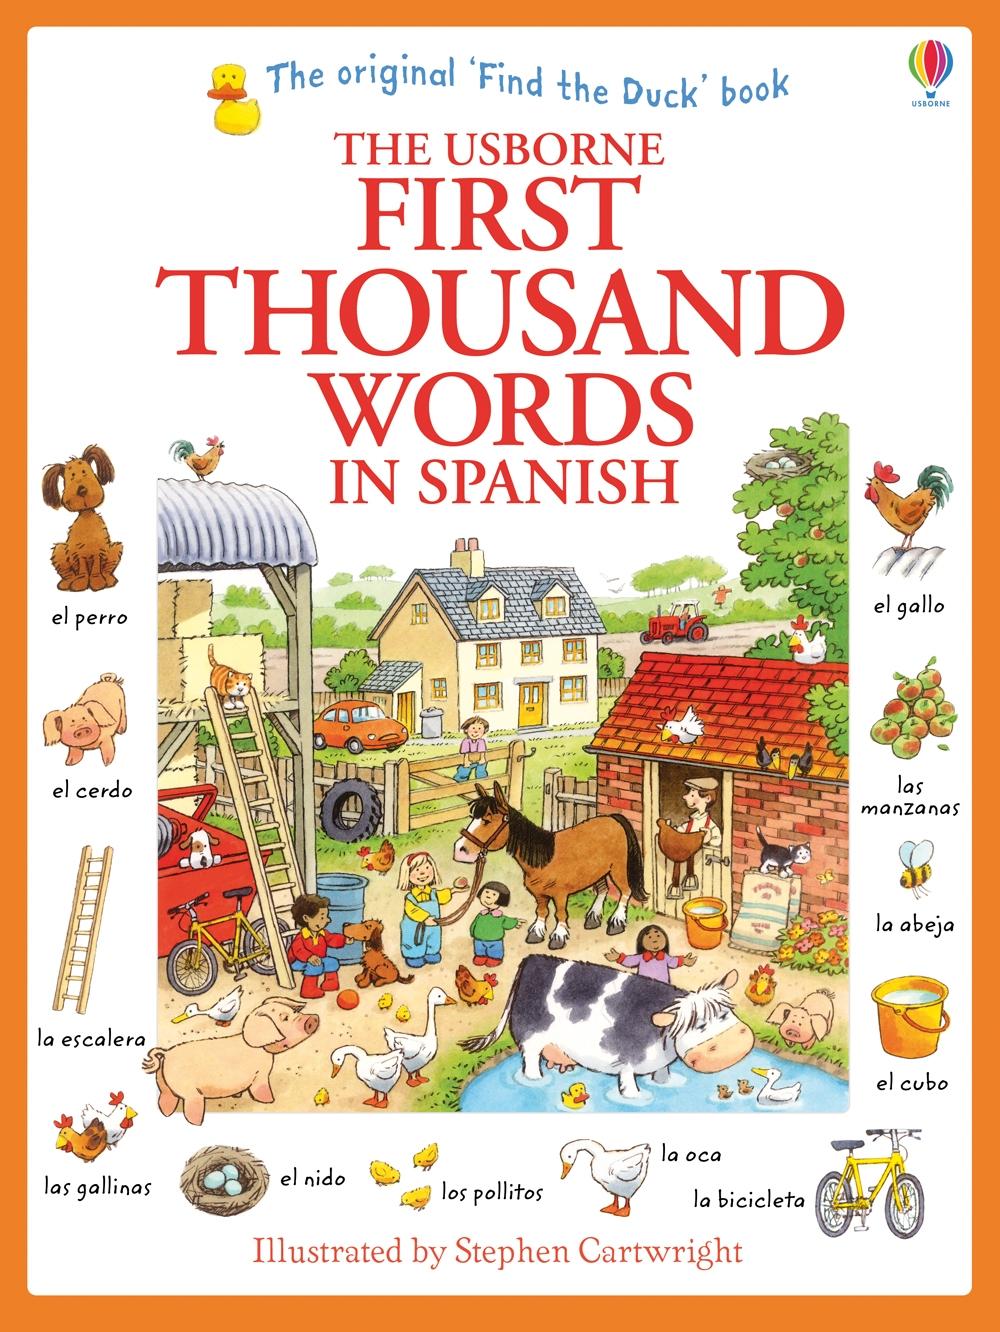 First Thousand Words in Spanish / Heather Amery / Taschenbuch / Kartoniert / Broschiert / Englisch / 2014 / Usborne Publishing / EAN 9781409583042 - Amery, Heather